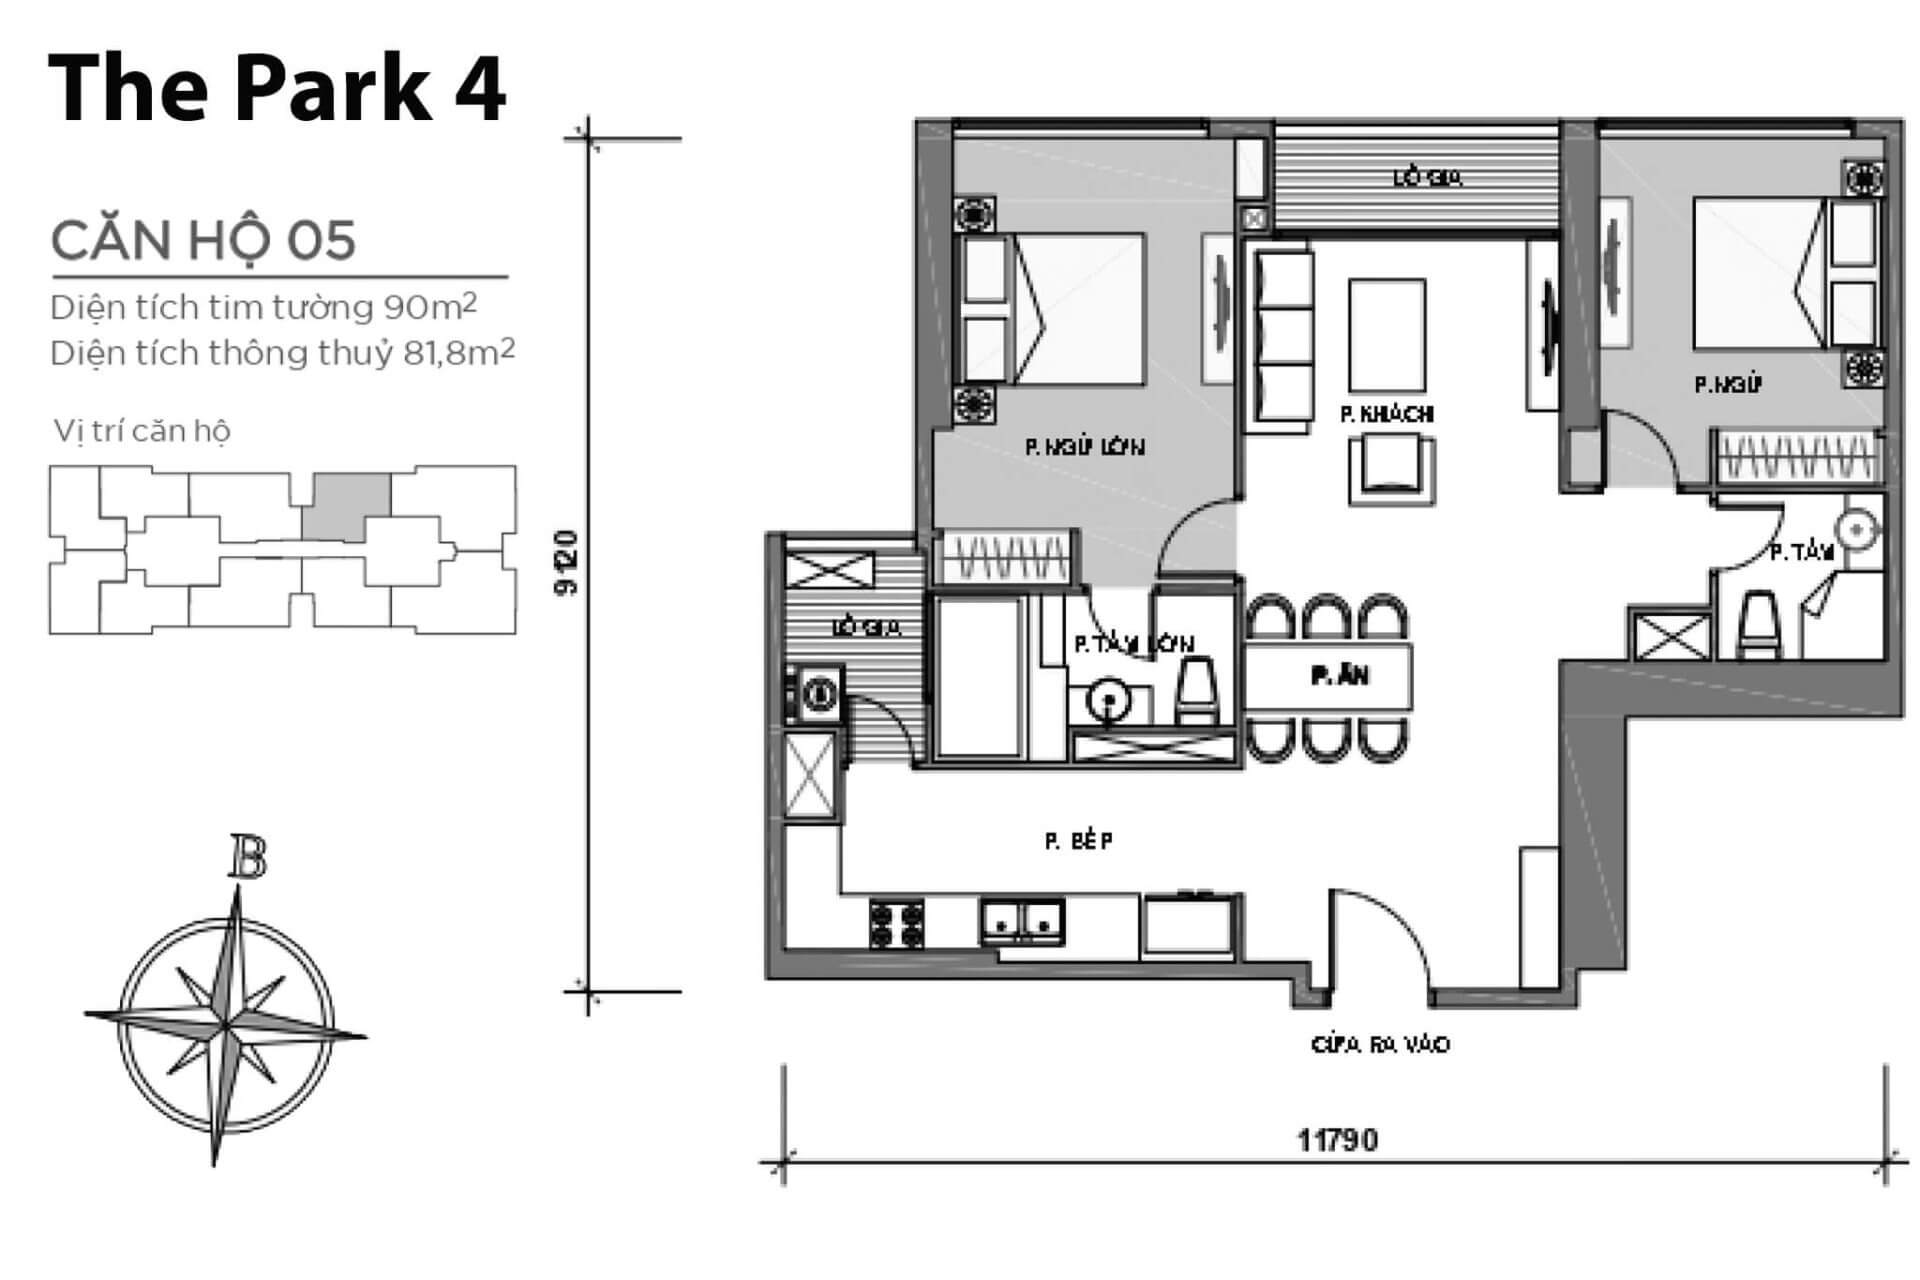 mặt bằng layout căn hộ số 05 Park 4 Vinhomes Central Park